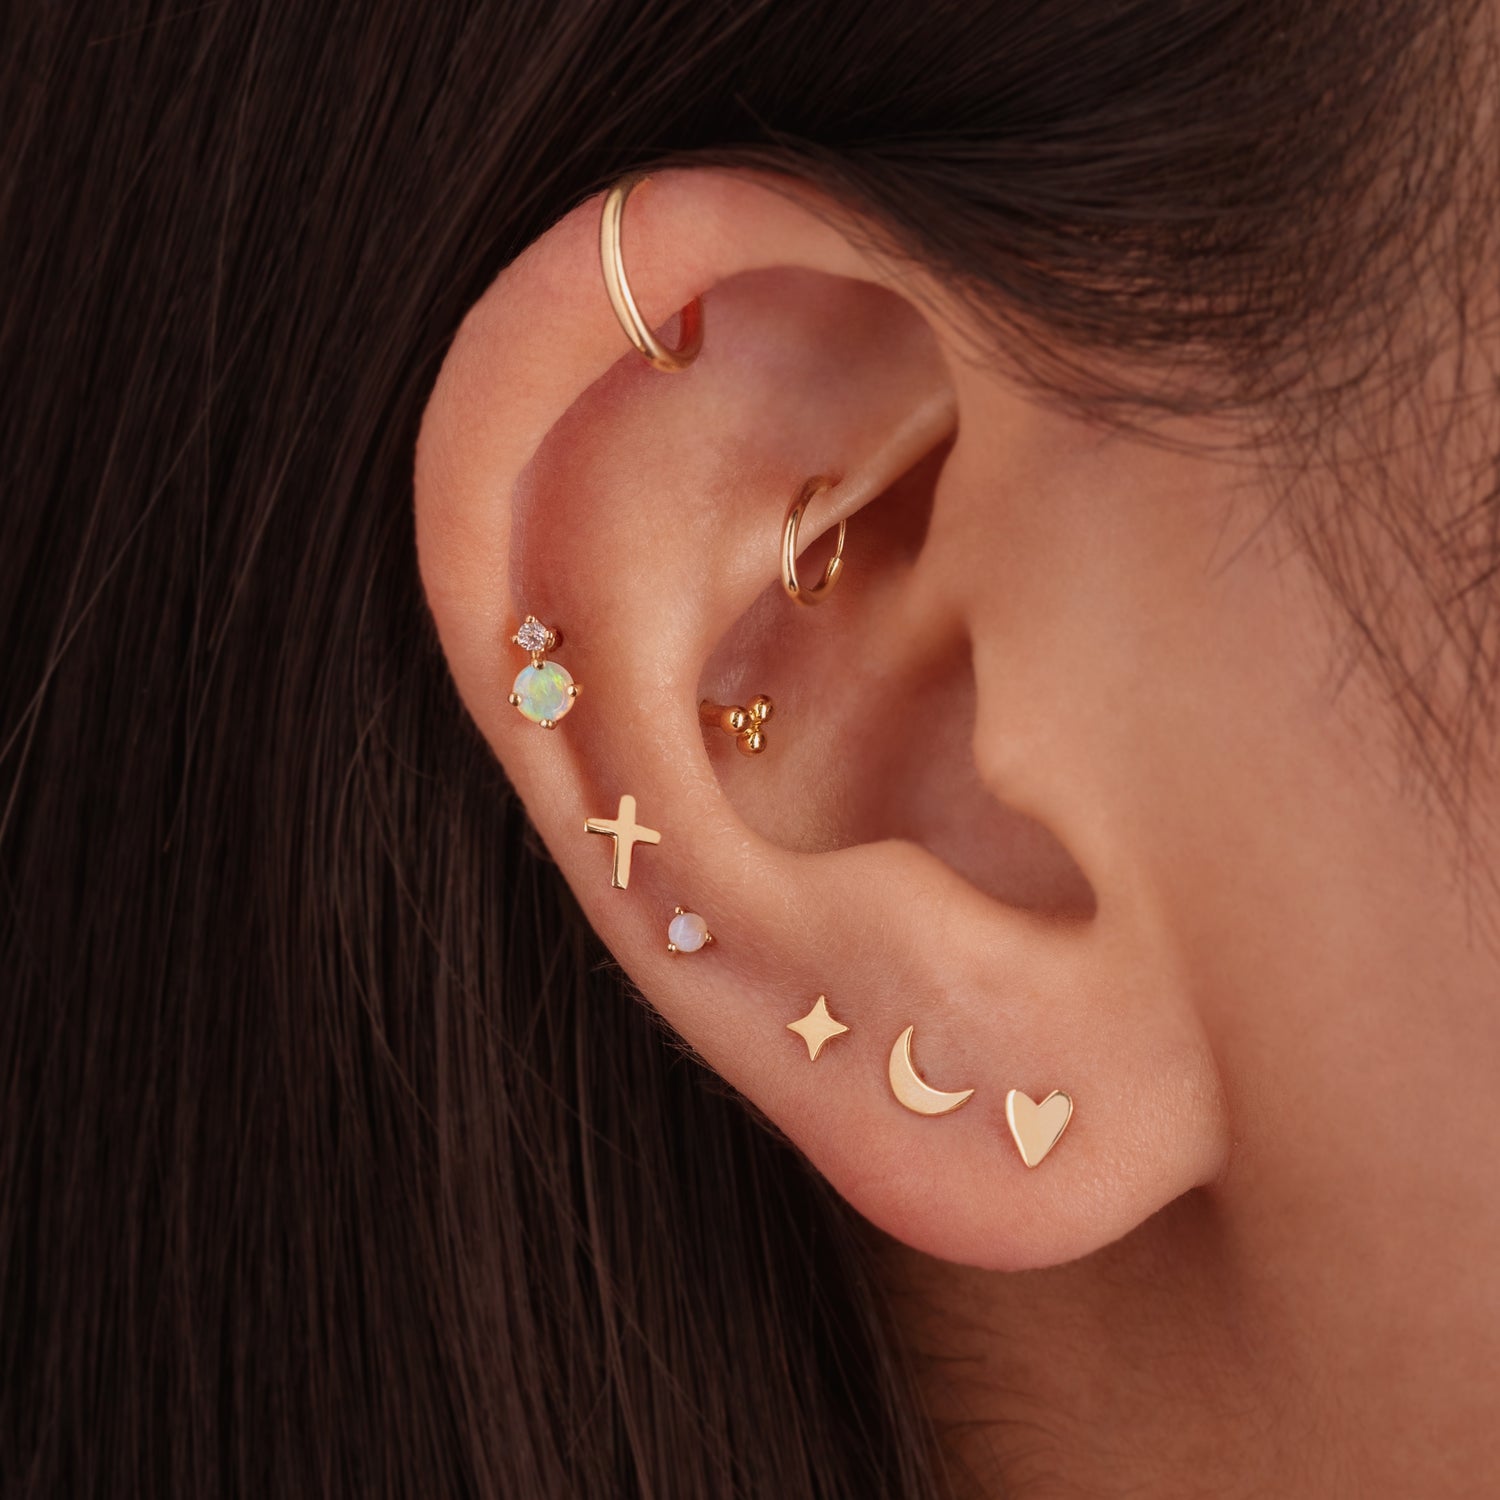 J&CO Jewellery 14K Solid Gold Ball Stud Earrings